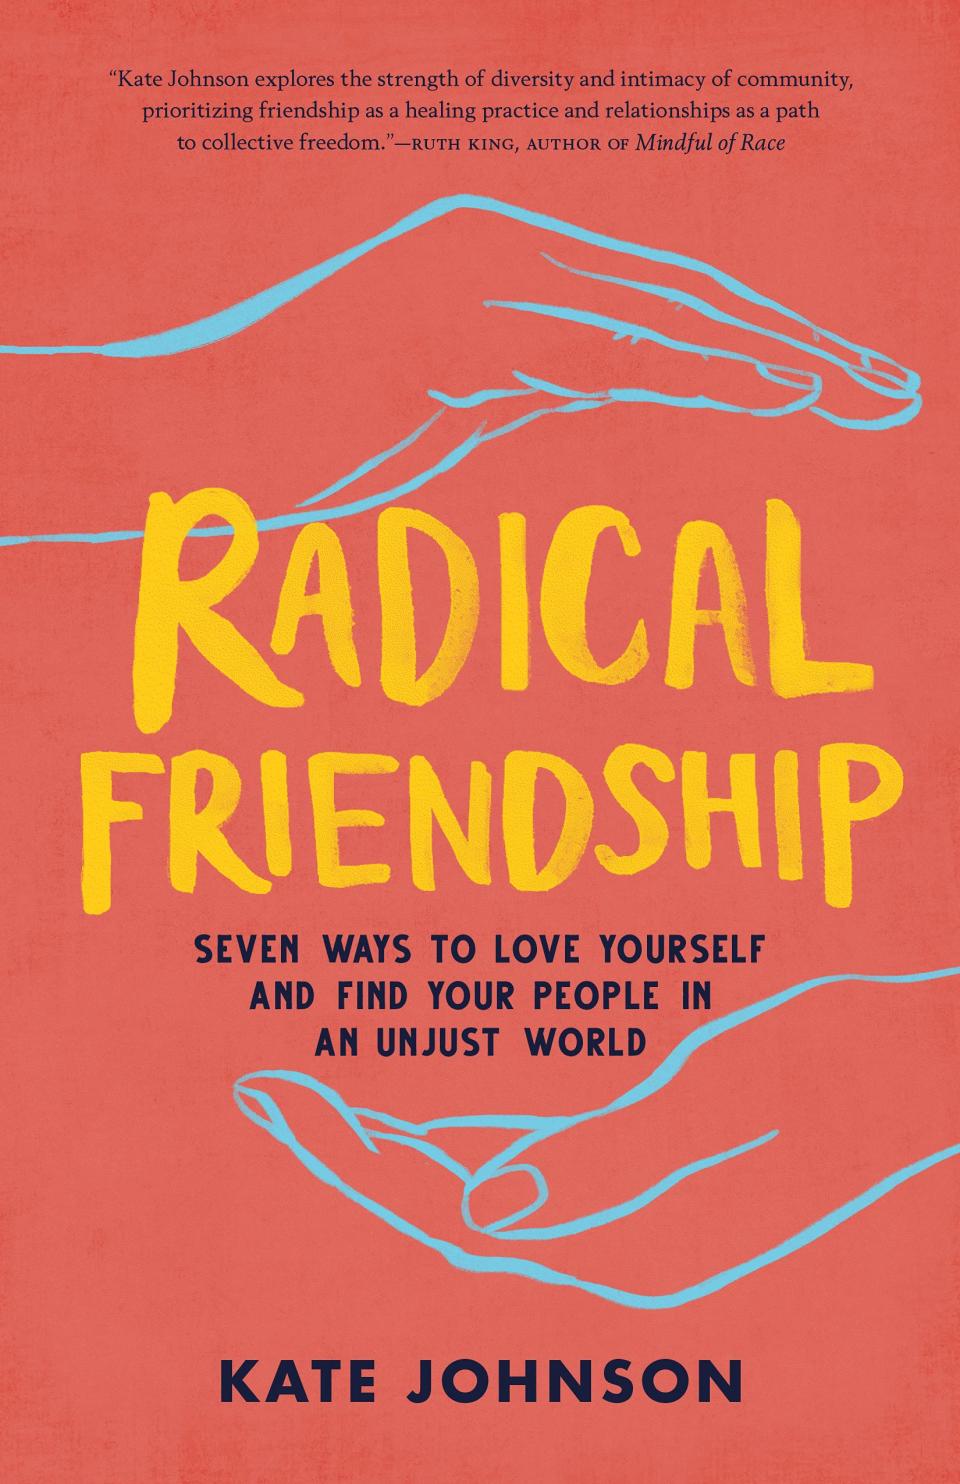 "Radical Friendship"